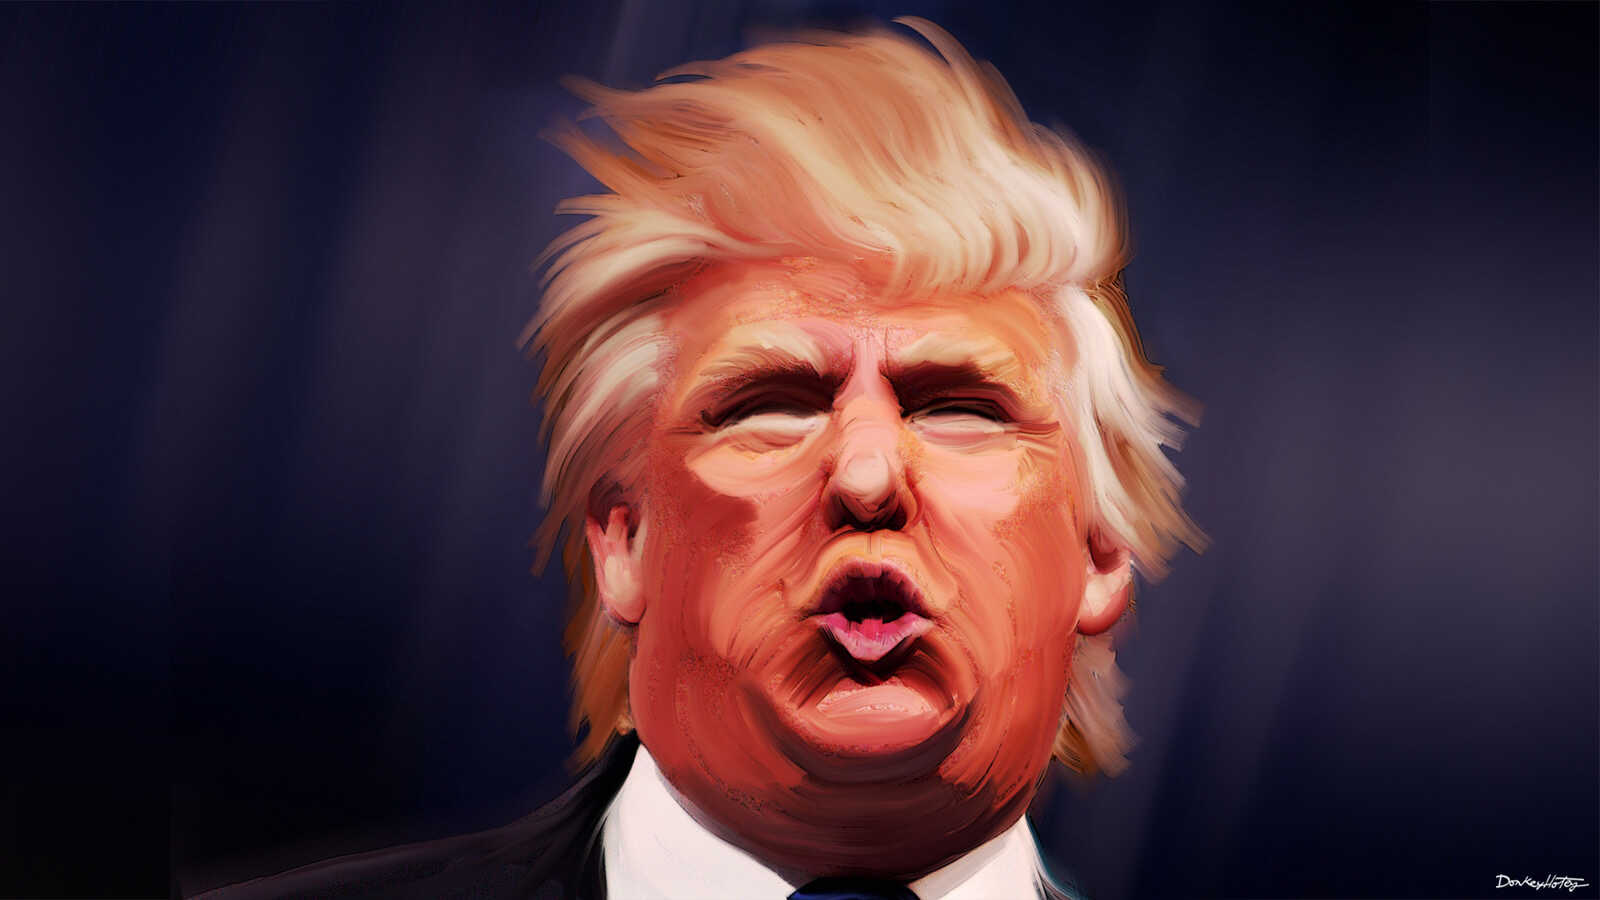 El ego de Donald, inmanejable como su pelo. Ilustración: Donkey Hotey